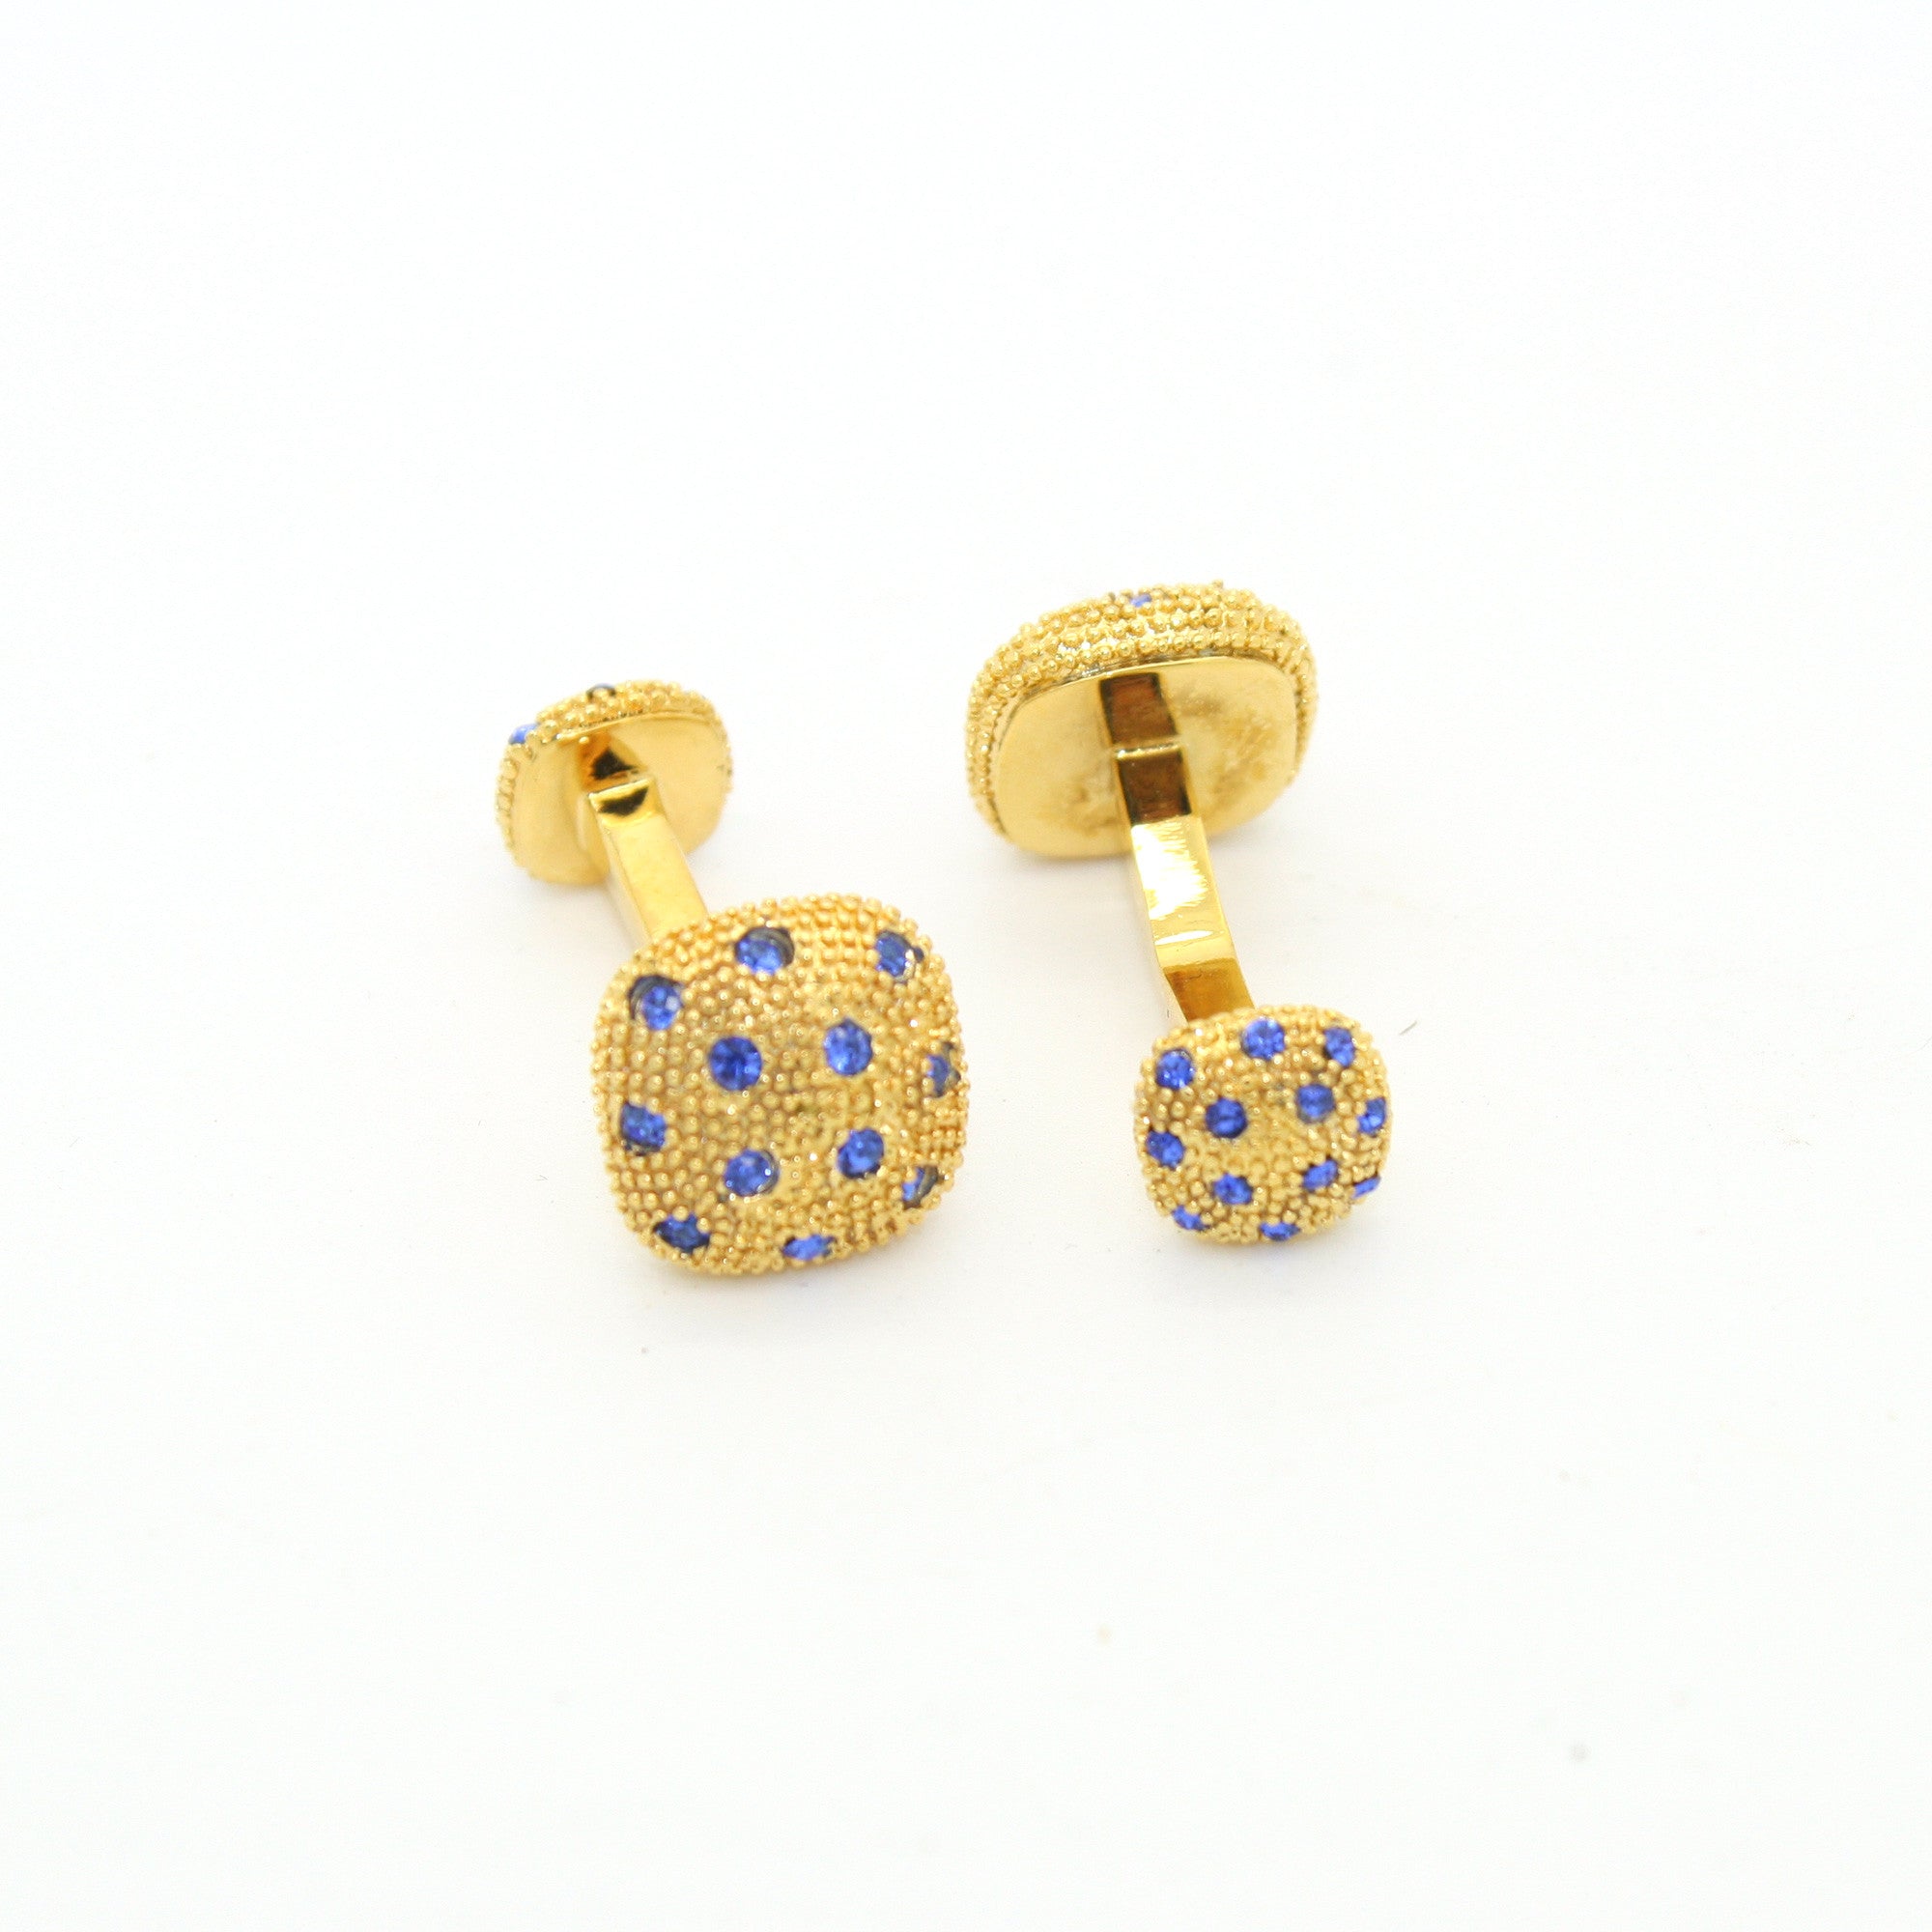 Goldtone Blue Gemstone Metal Cuff Links With Jewelry Box